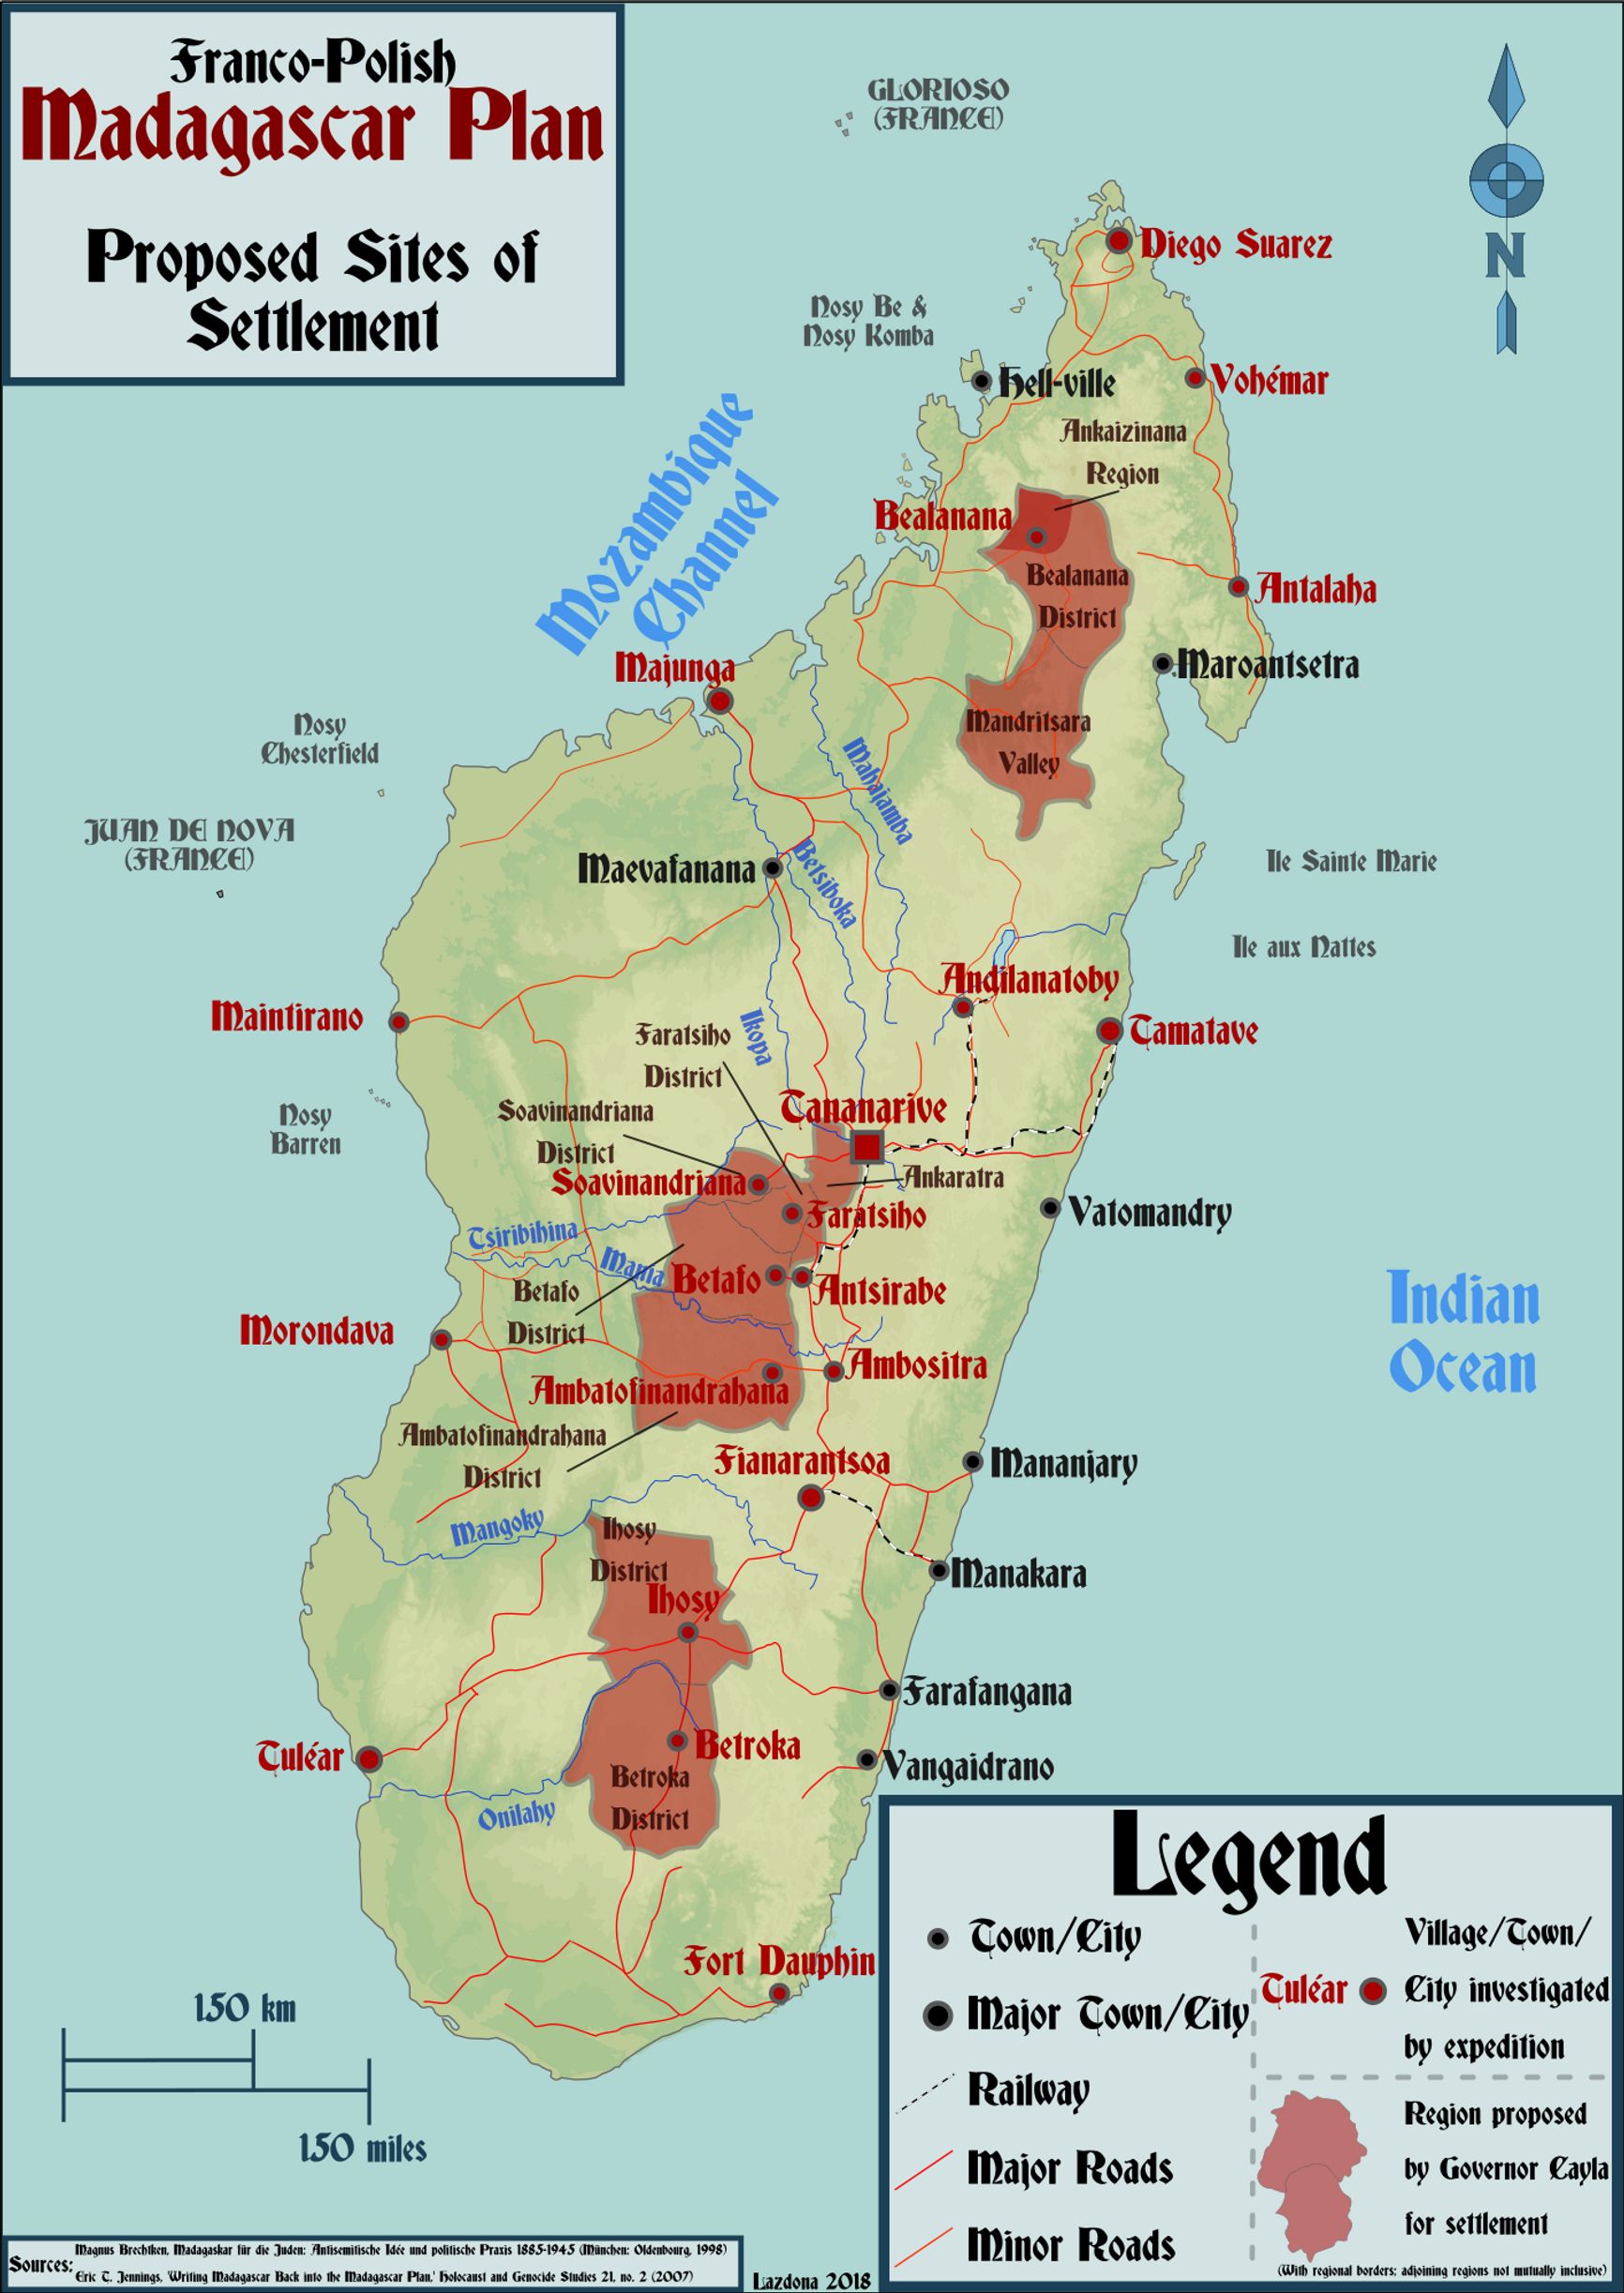 Предлагаемые участки для расселения евреев на Мадагаскаре в соответствии с французско-польской версией плана 1937 года